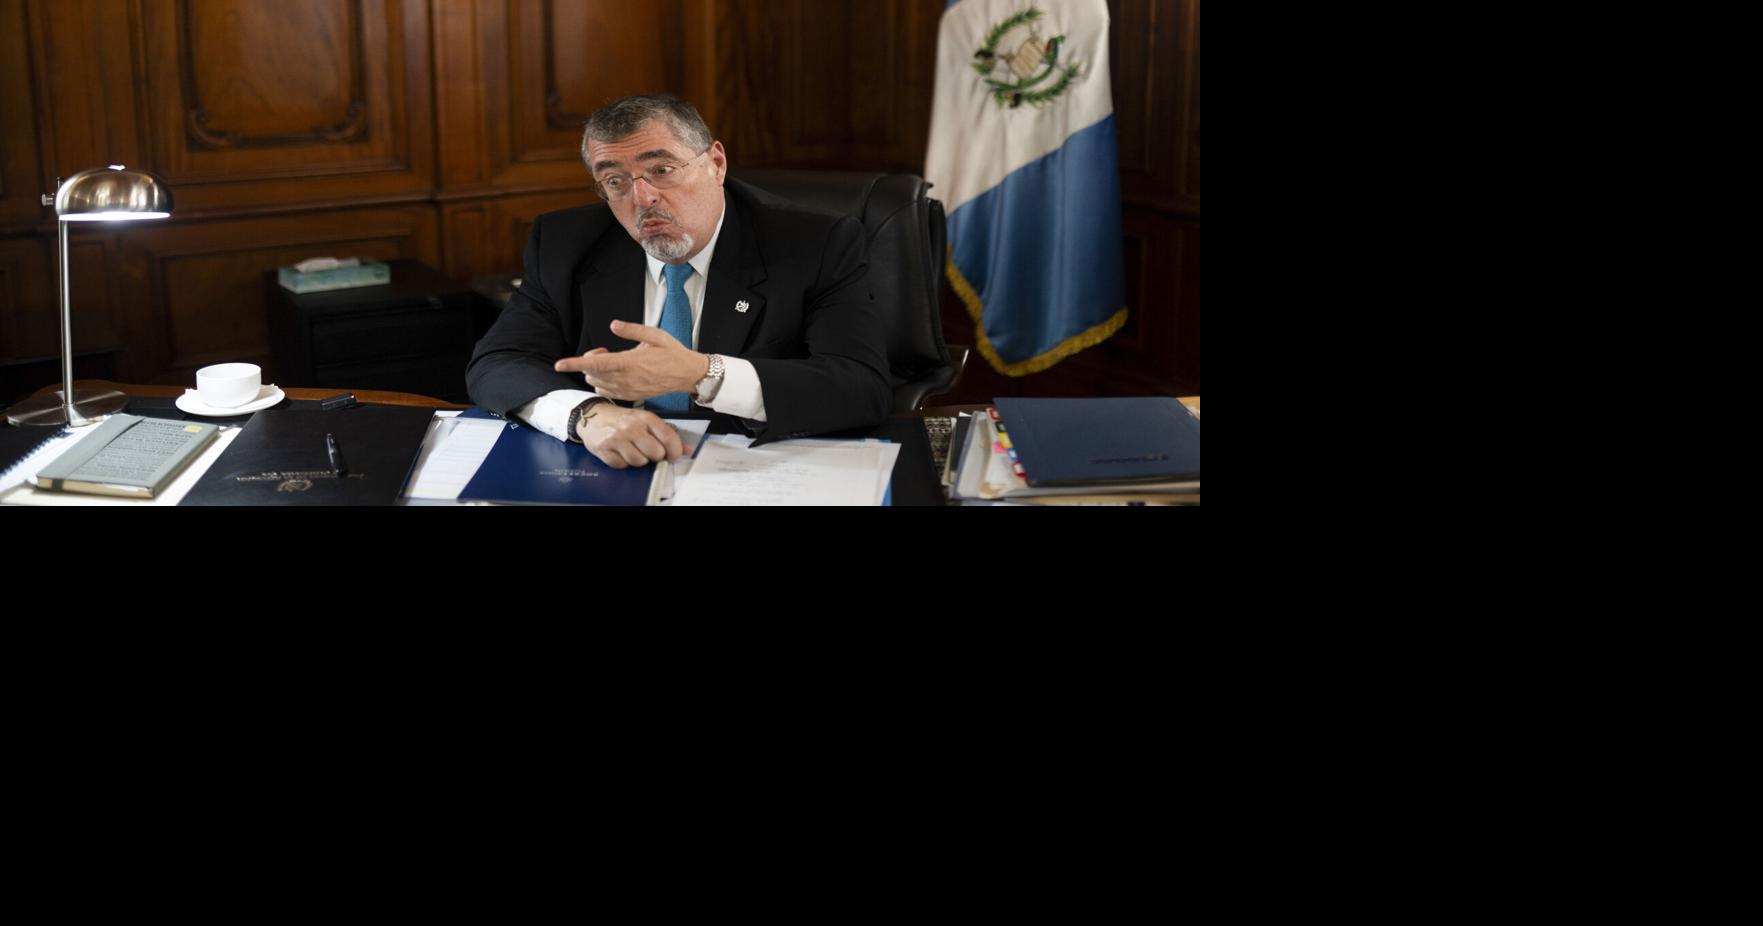 Presidente de Guatemala |  Titulares de noticias mundiales